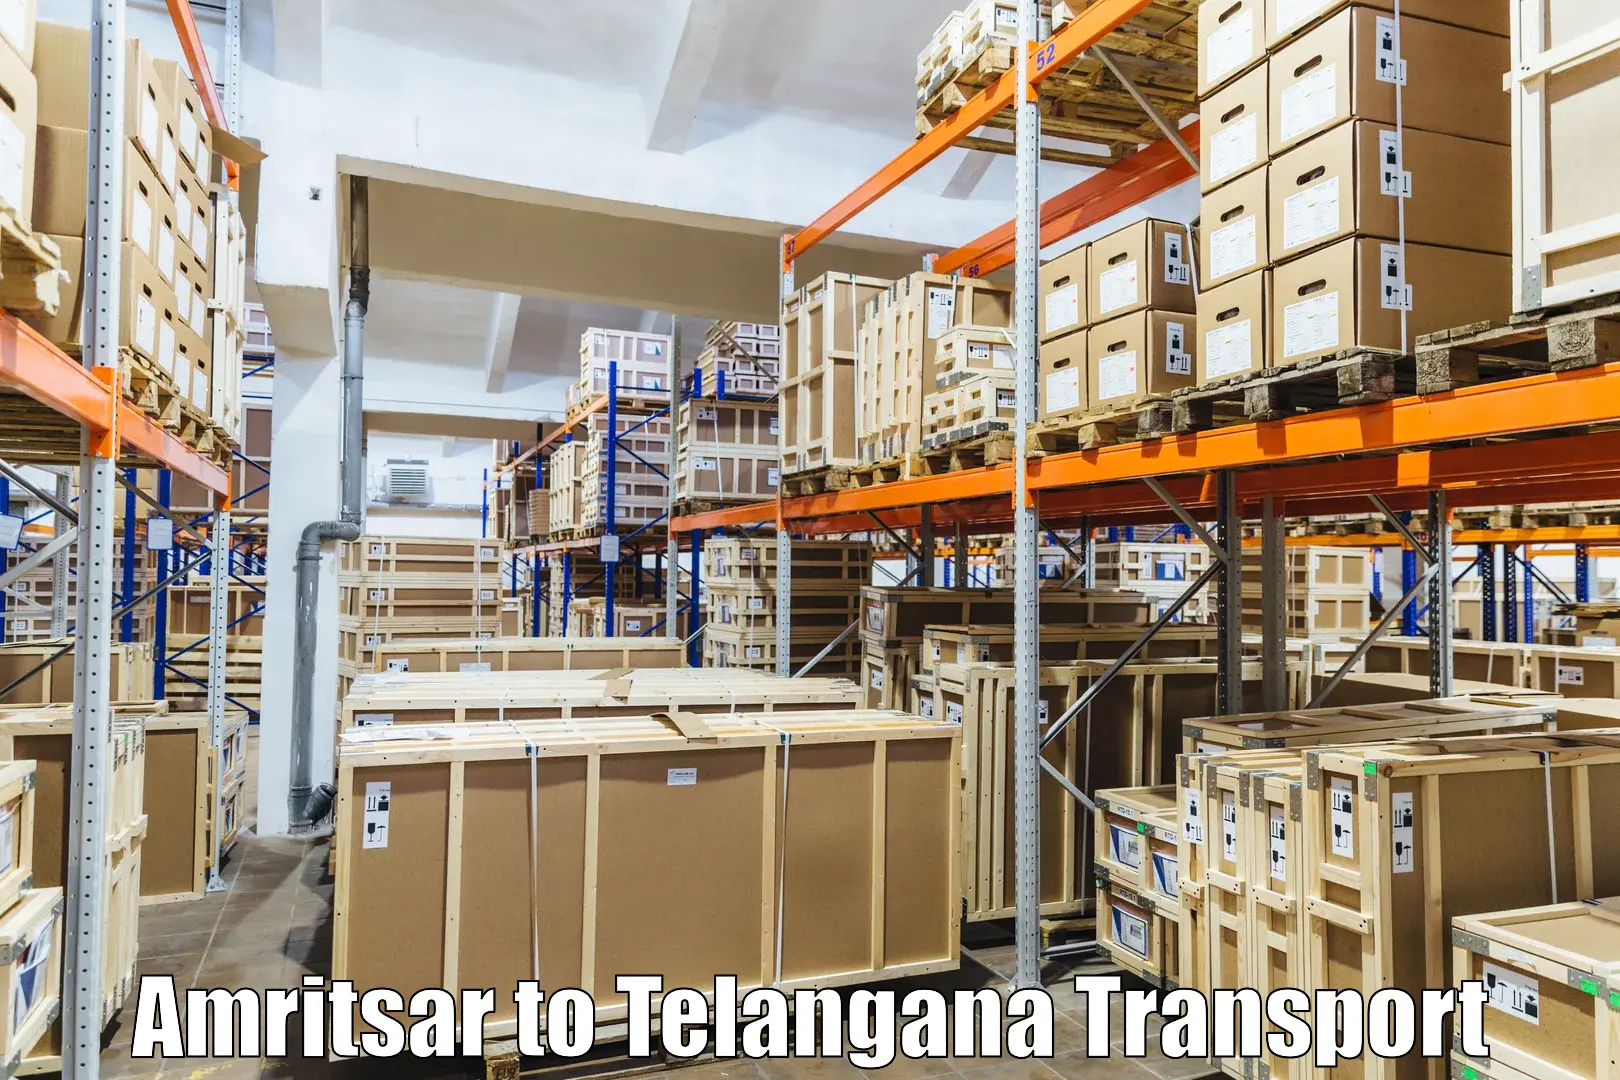 Part load transport service in India Amritsar to Devarakonda